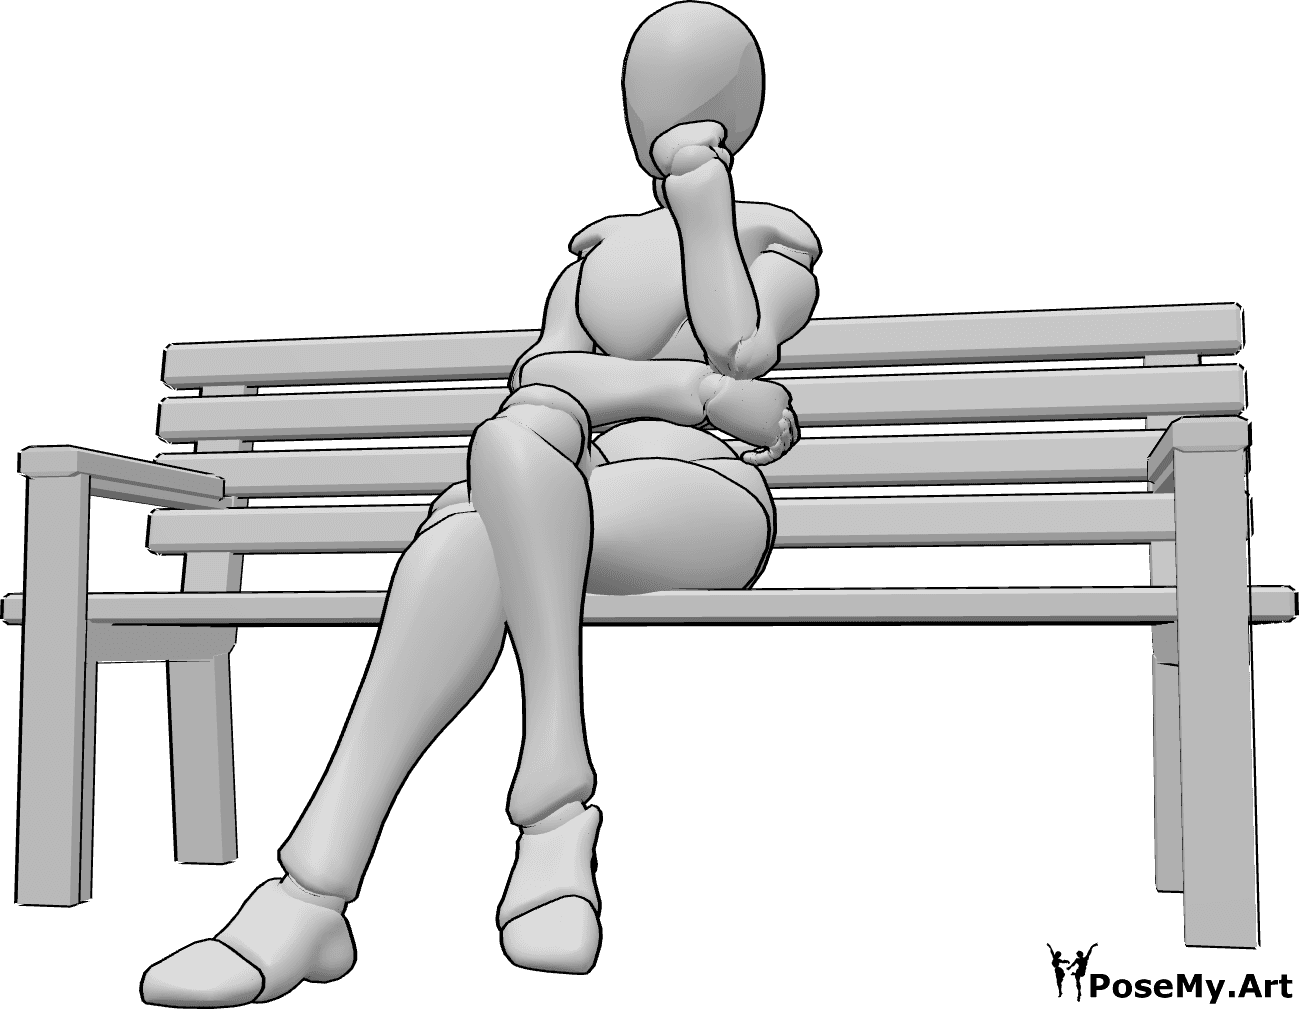 Referência de poses- Pose do banco sentado - A mulher está sentada no banco com as pernas cruzadas